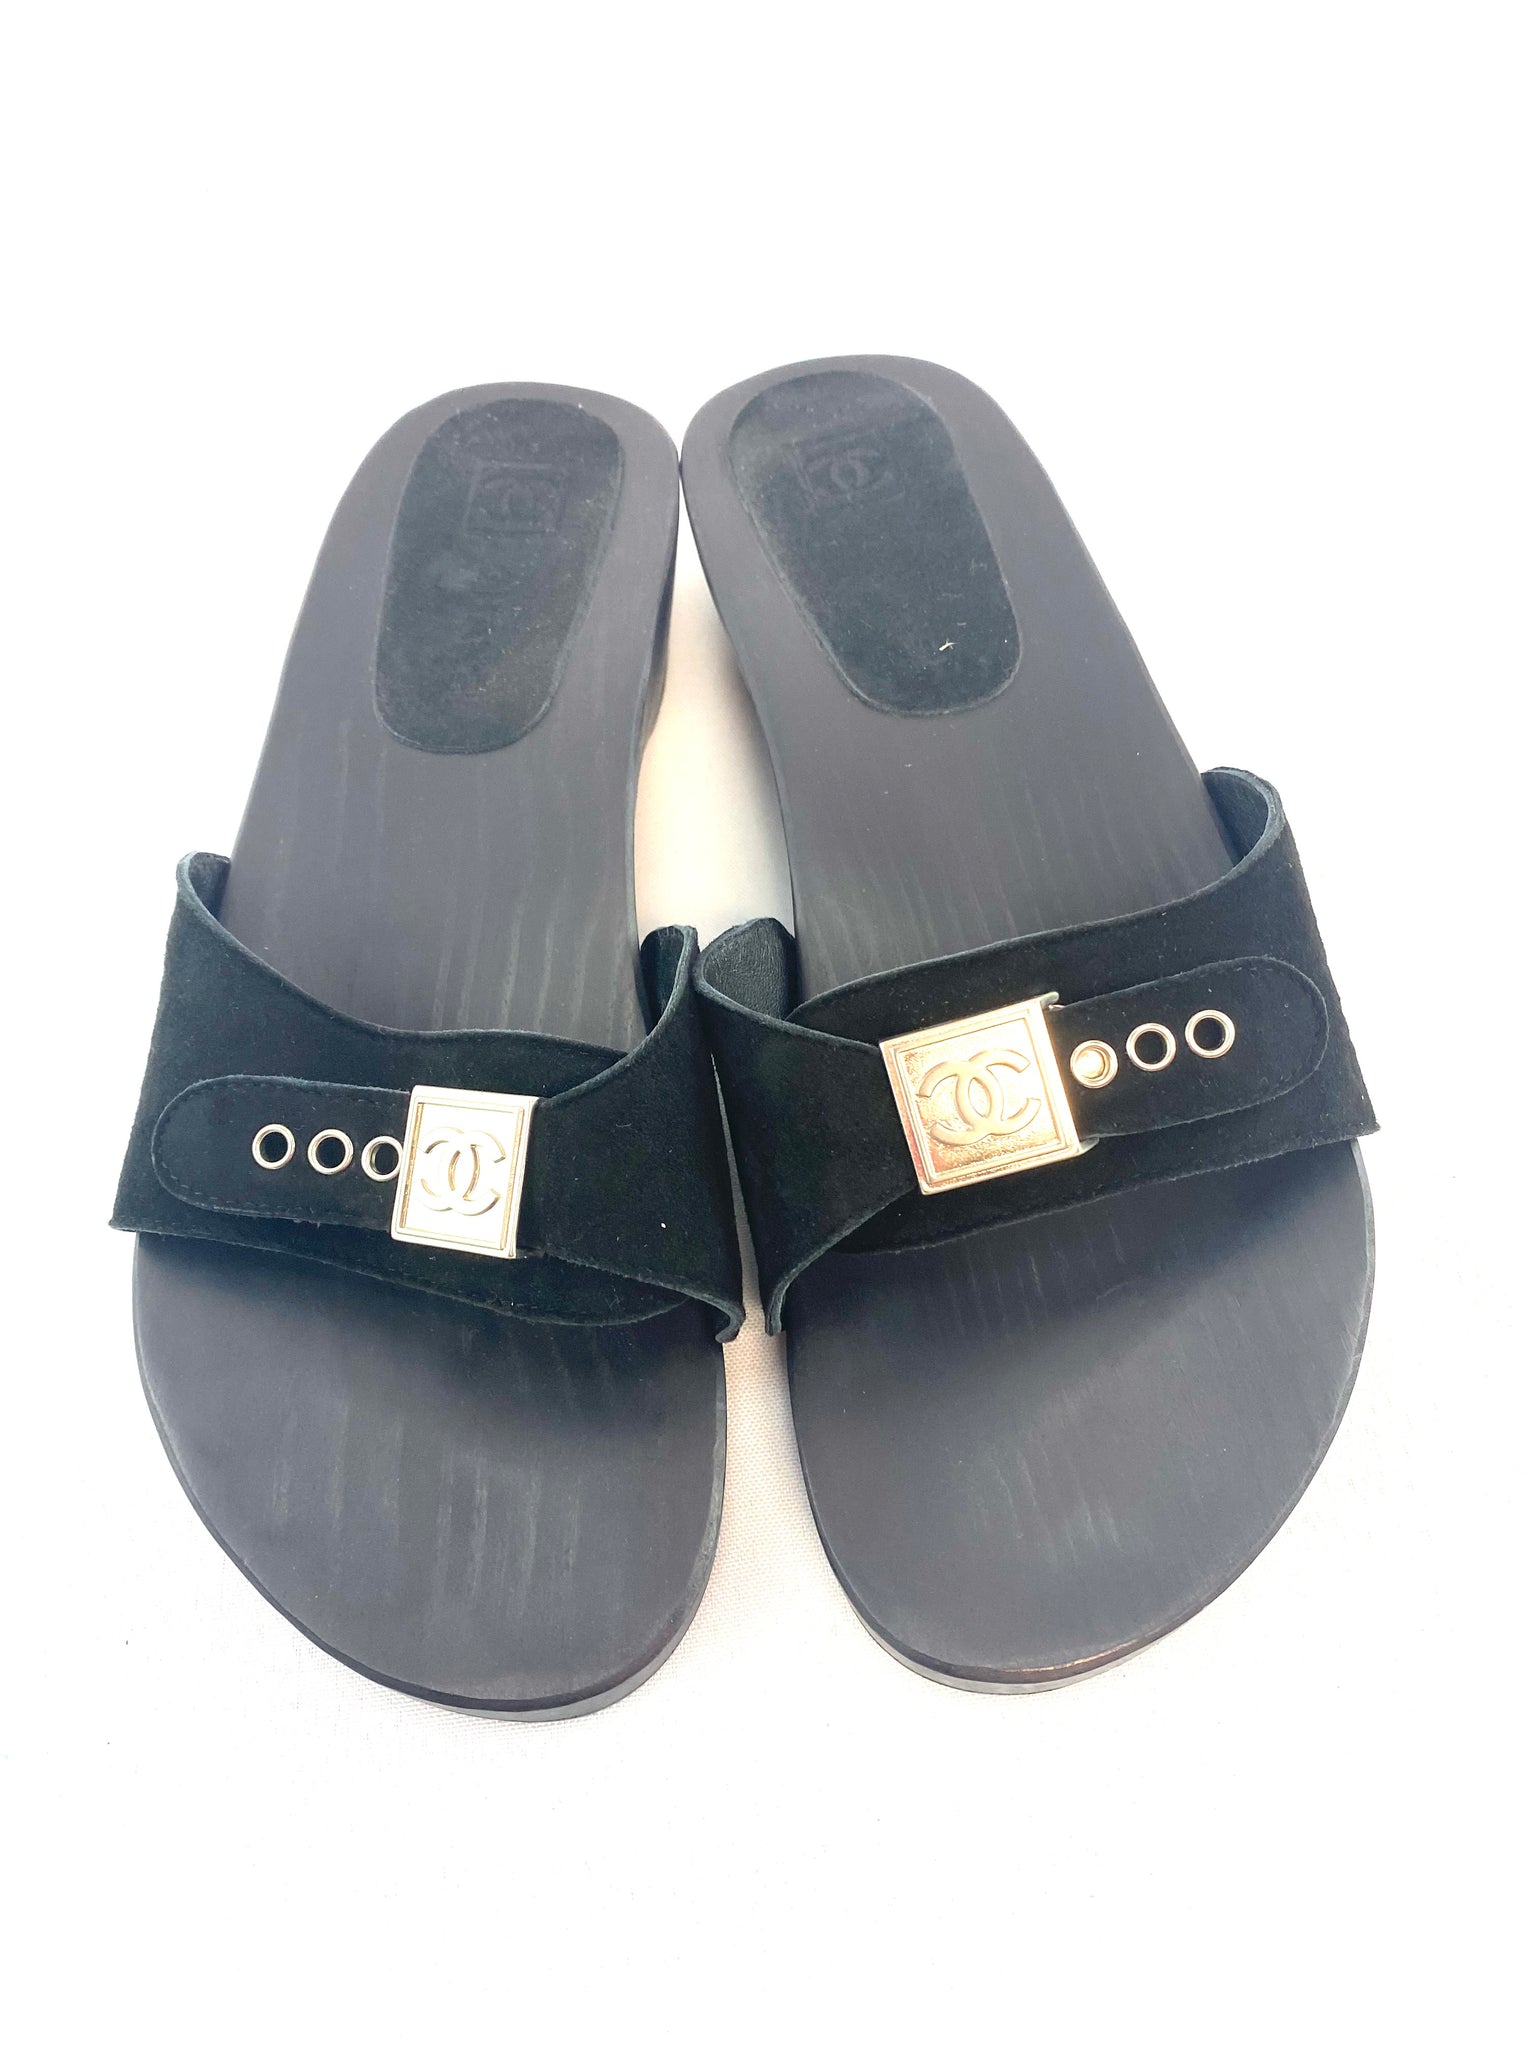 Chanel Black Clogs Sandals – thankunext.us